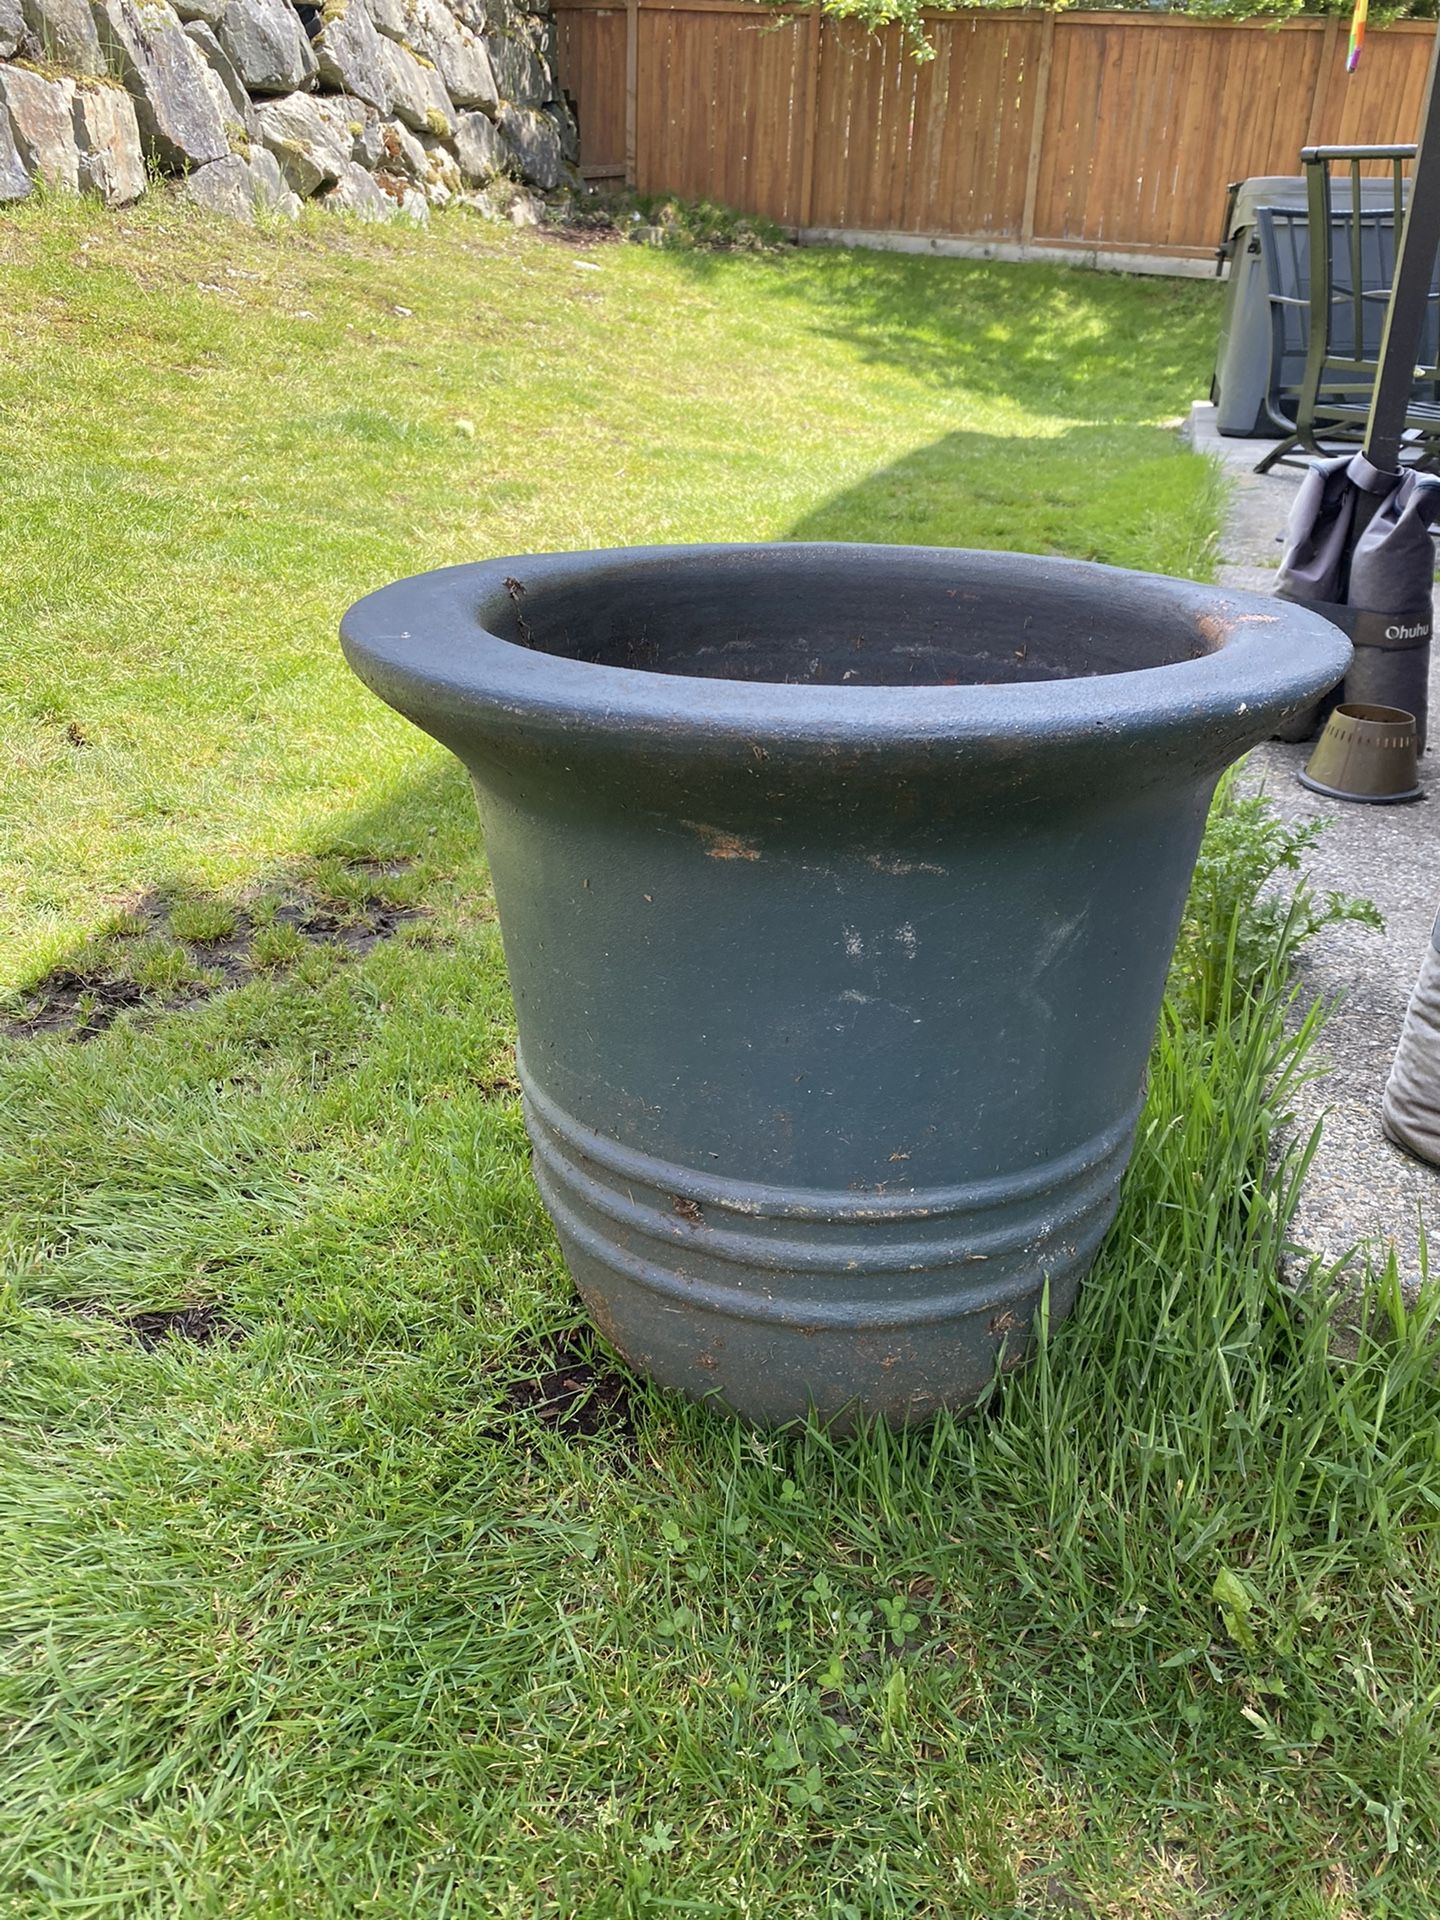 Giant flower pot, none draining